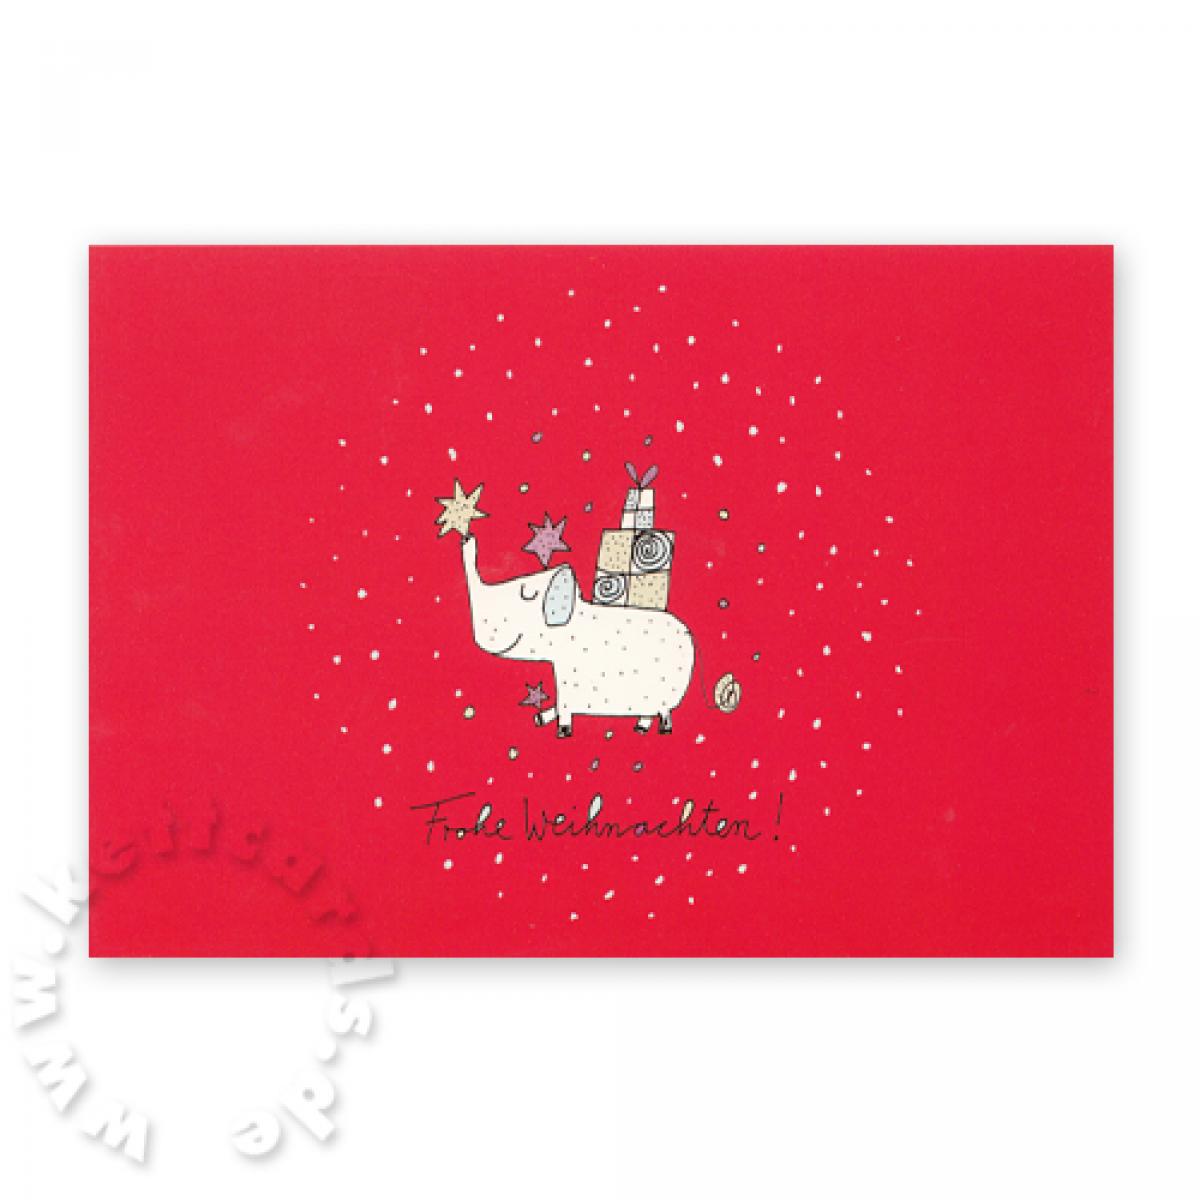 Weihnachts-Postkarte: Elefant mit Geschenk - Frohe Weihnachten!